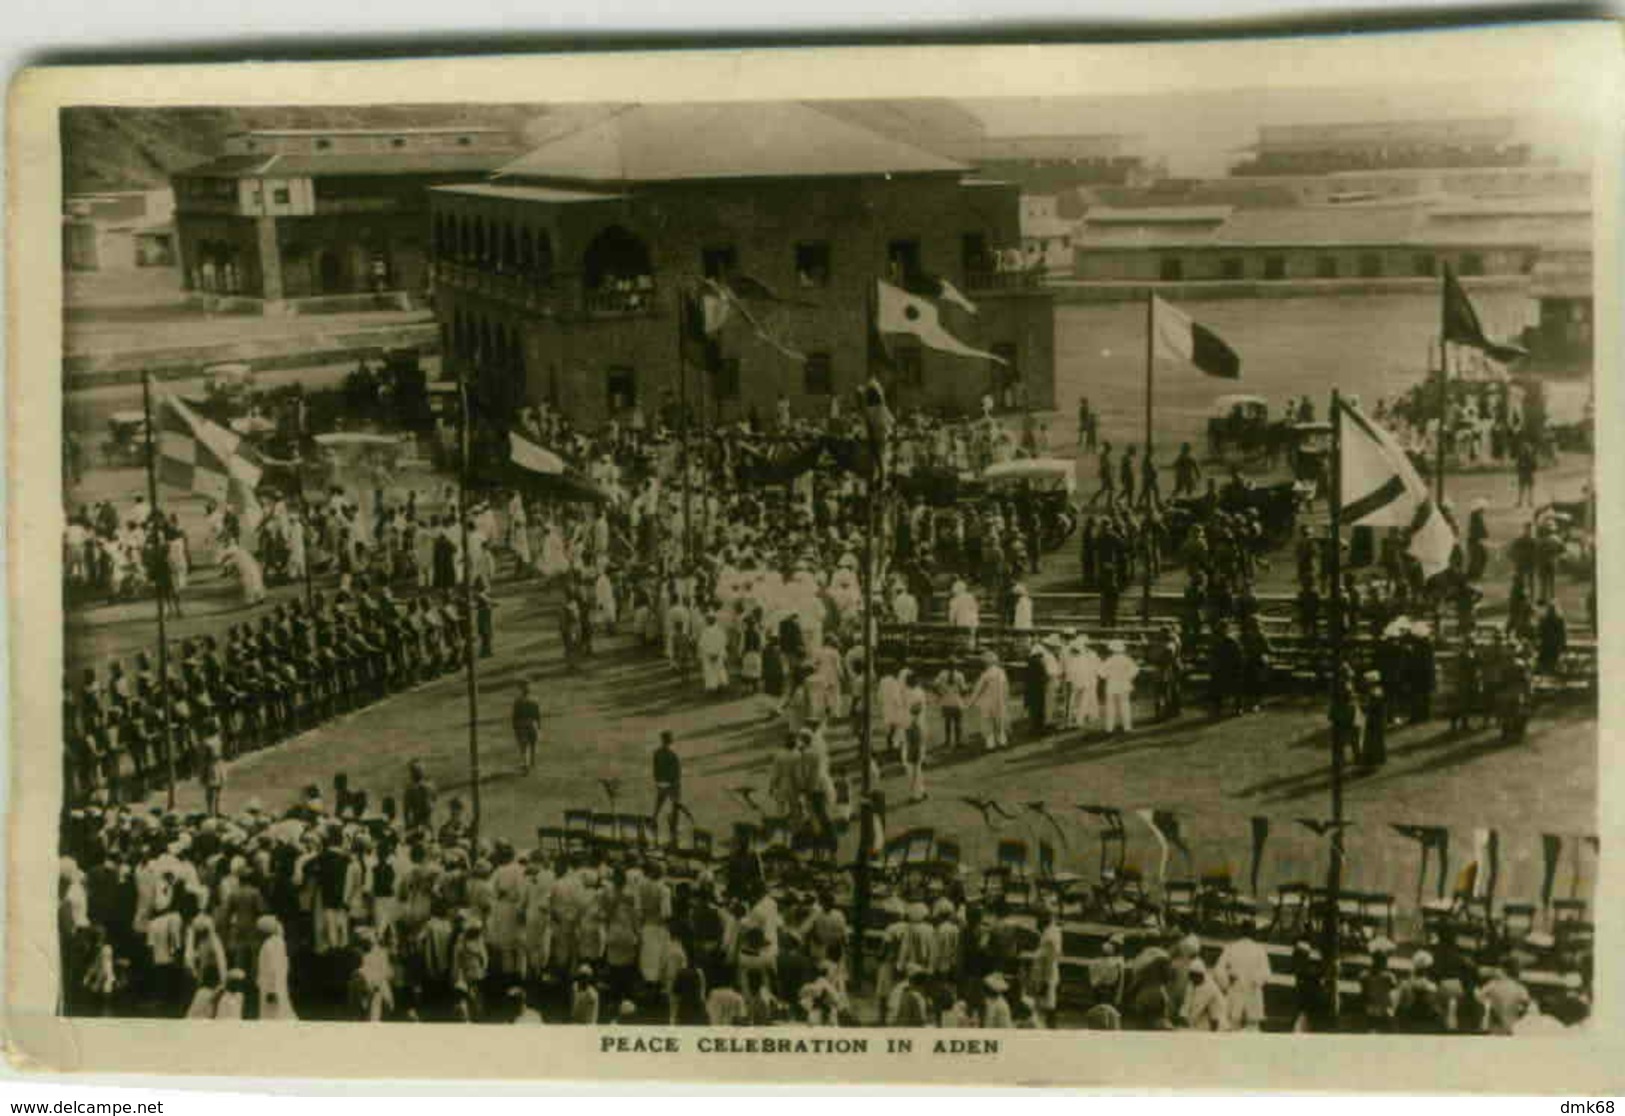 ADEN - PEACE CELEBRATION - BOAT POSTMARK / ANNULO DI BORDO -  REGIA NAVE ALULA - RARE - 1920s (2981) - Yemen